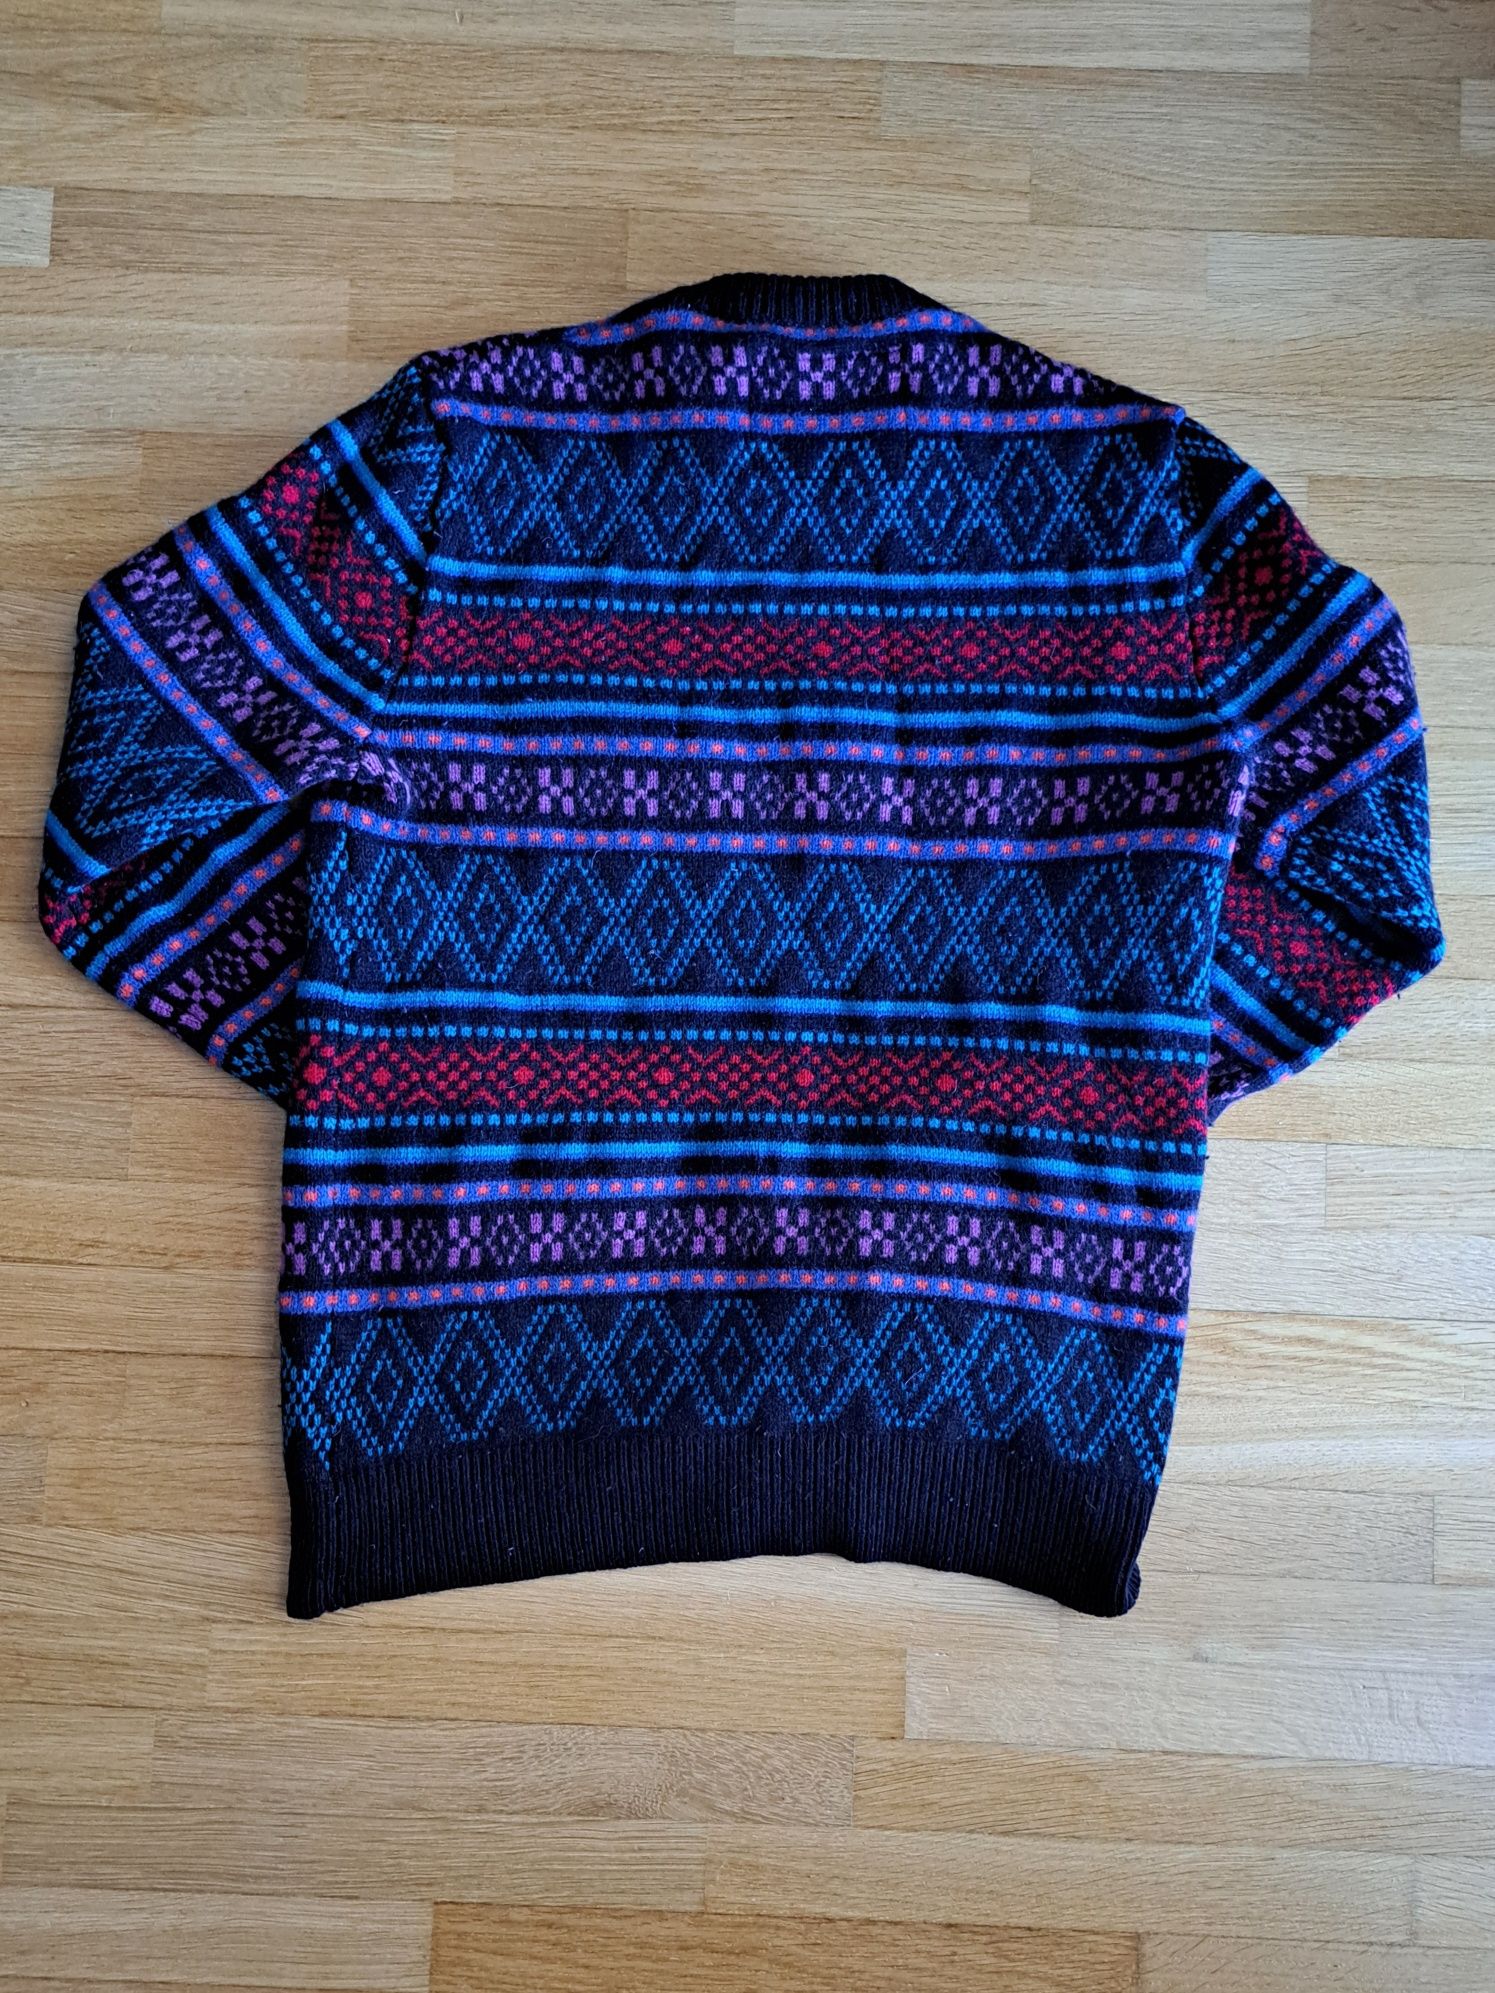 Wełniany kolorowy sweter merino Jack Wills, M